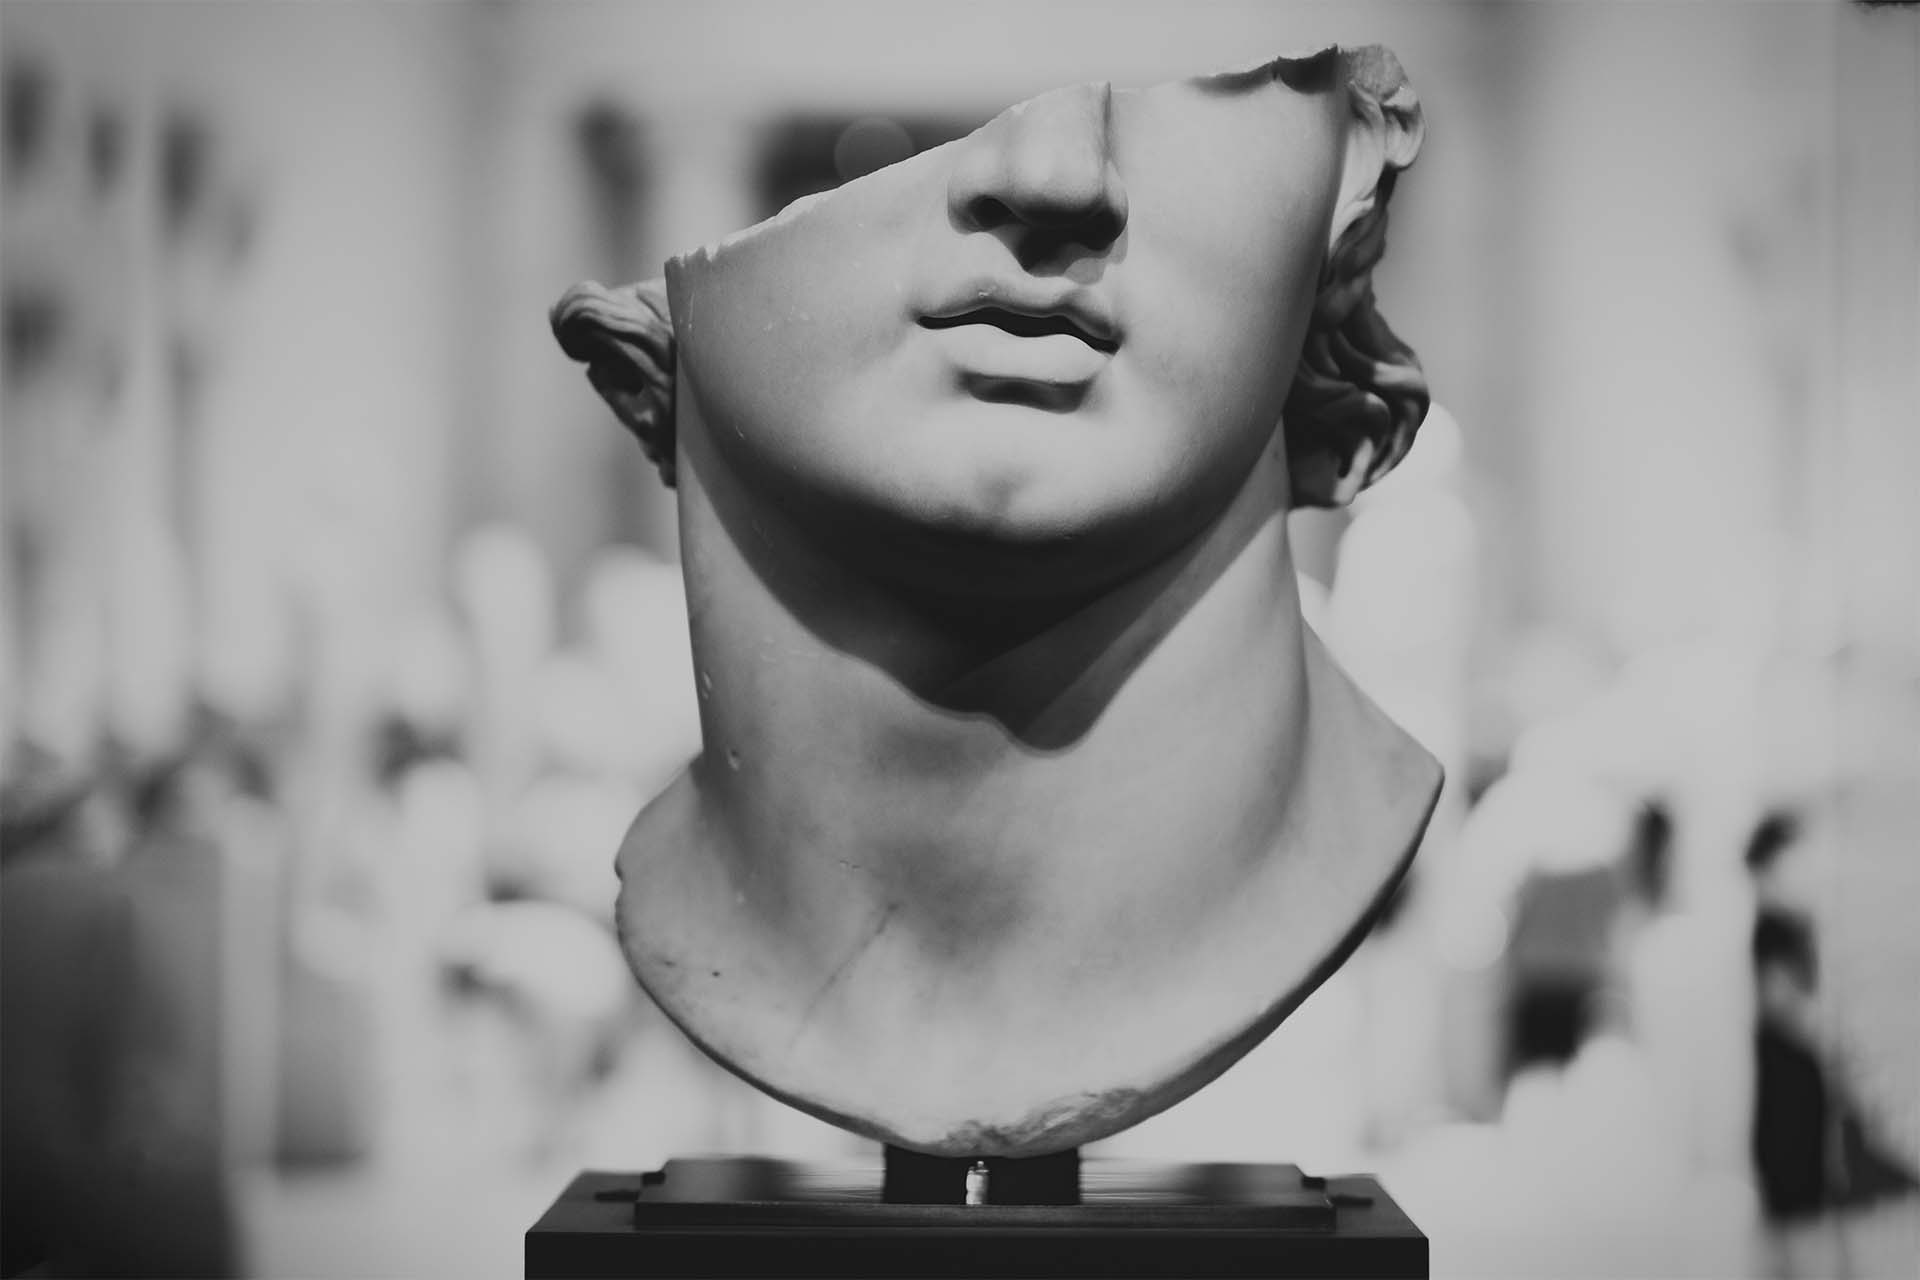 Tête colossale d'un jeune, vestige d'une statue grecque, exposée au Metropolitan Museum of Art de New York. Photo par Levi Meir Clancy